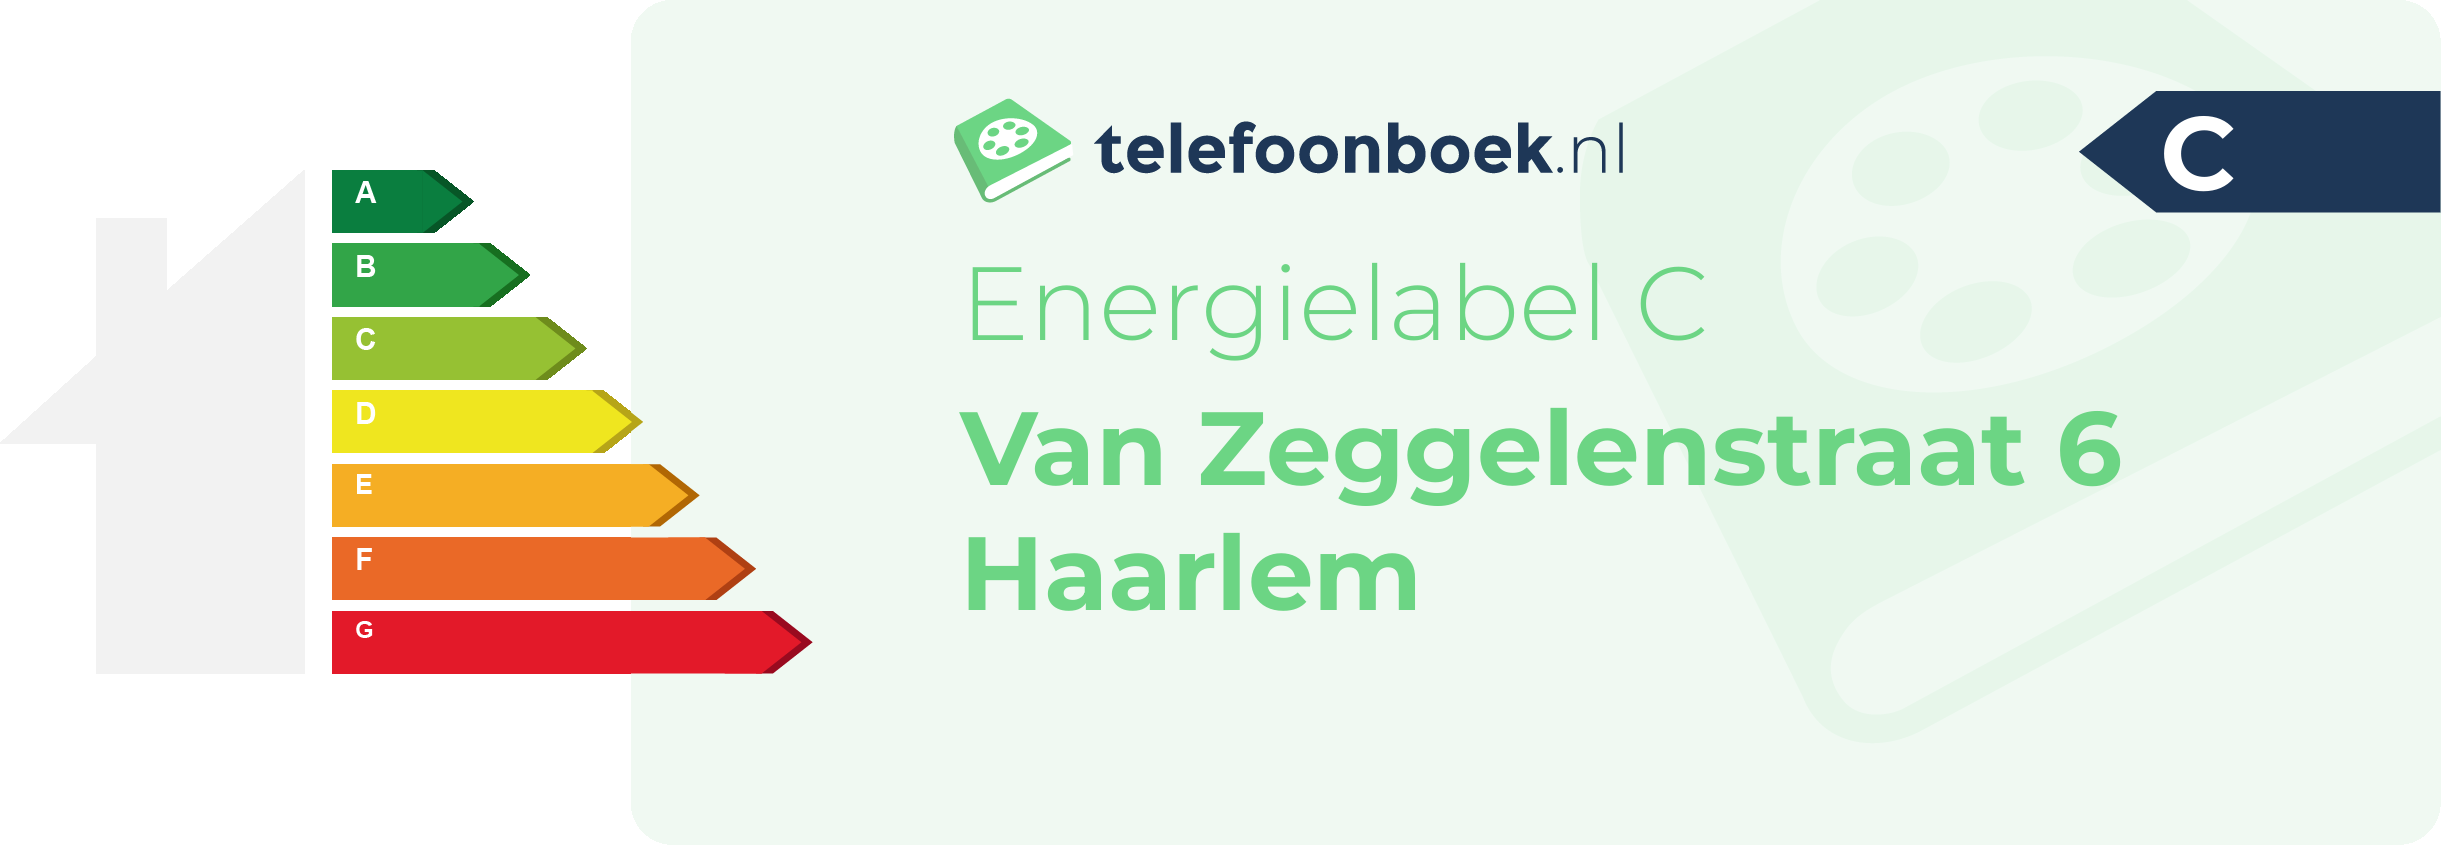 Energielabel Van Zeggelenstraat 6 Haarlem